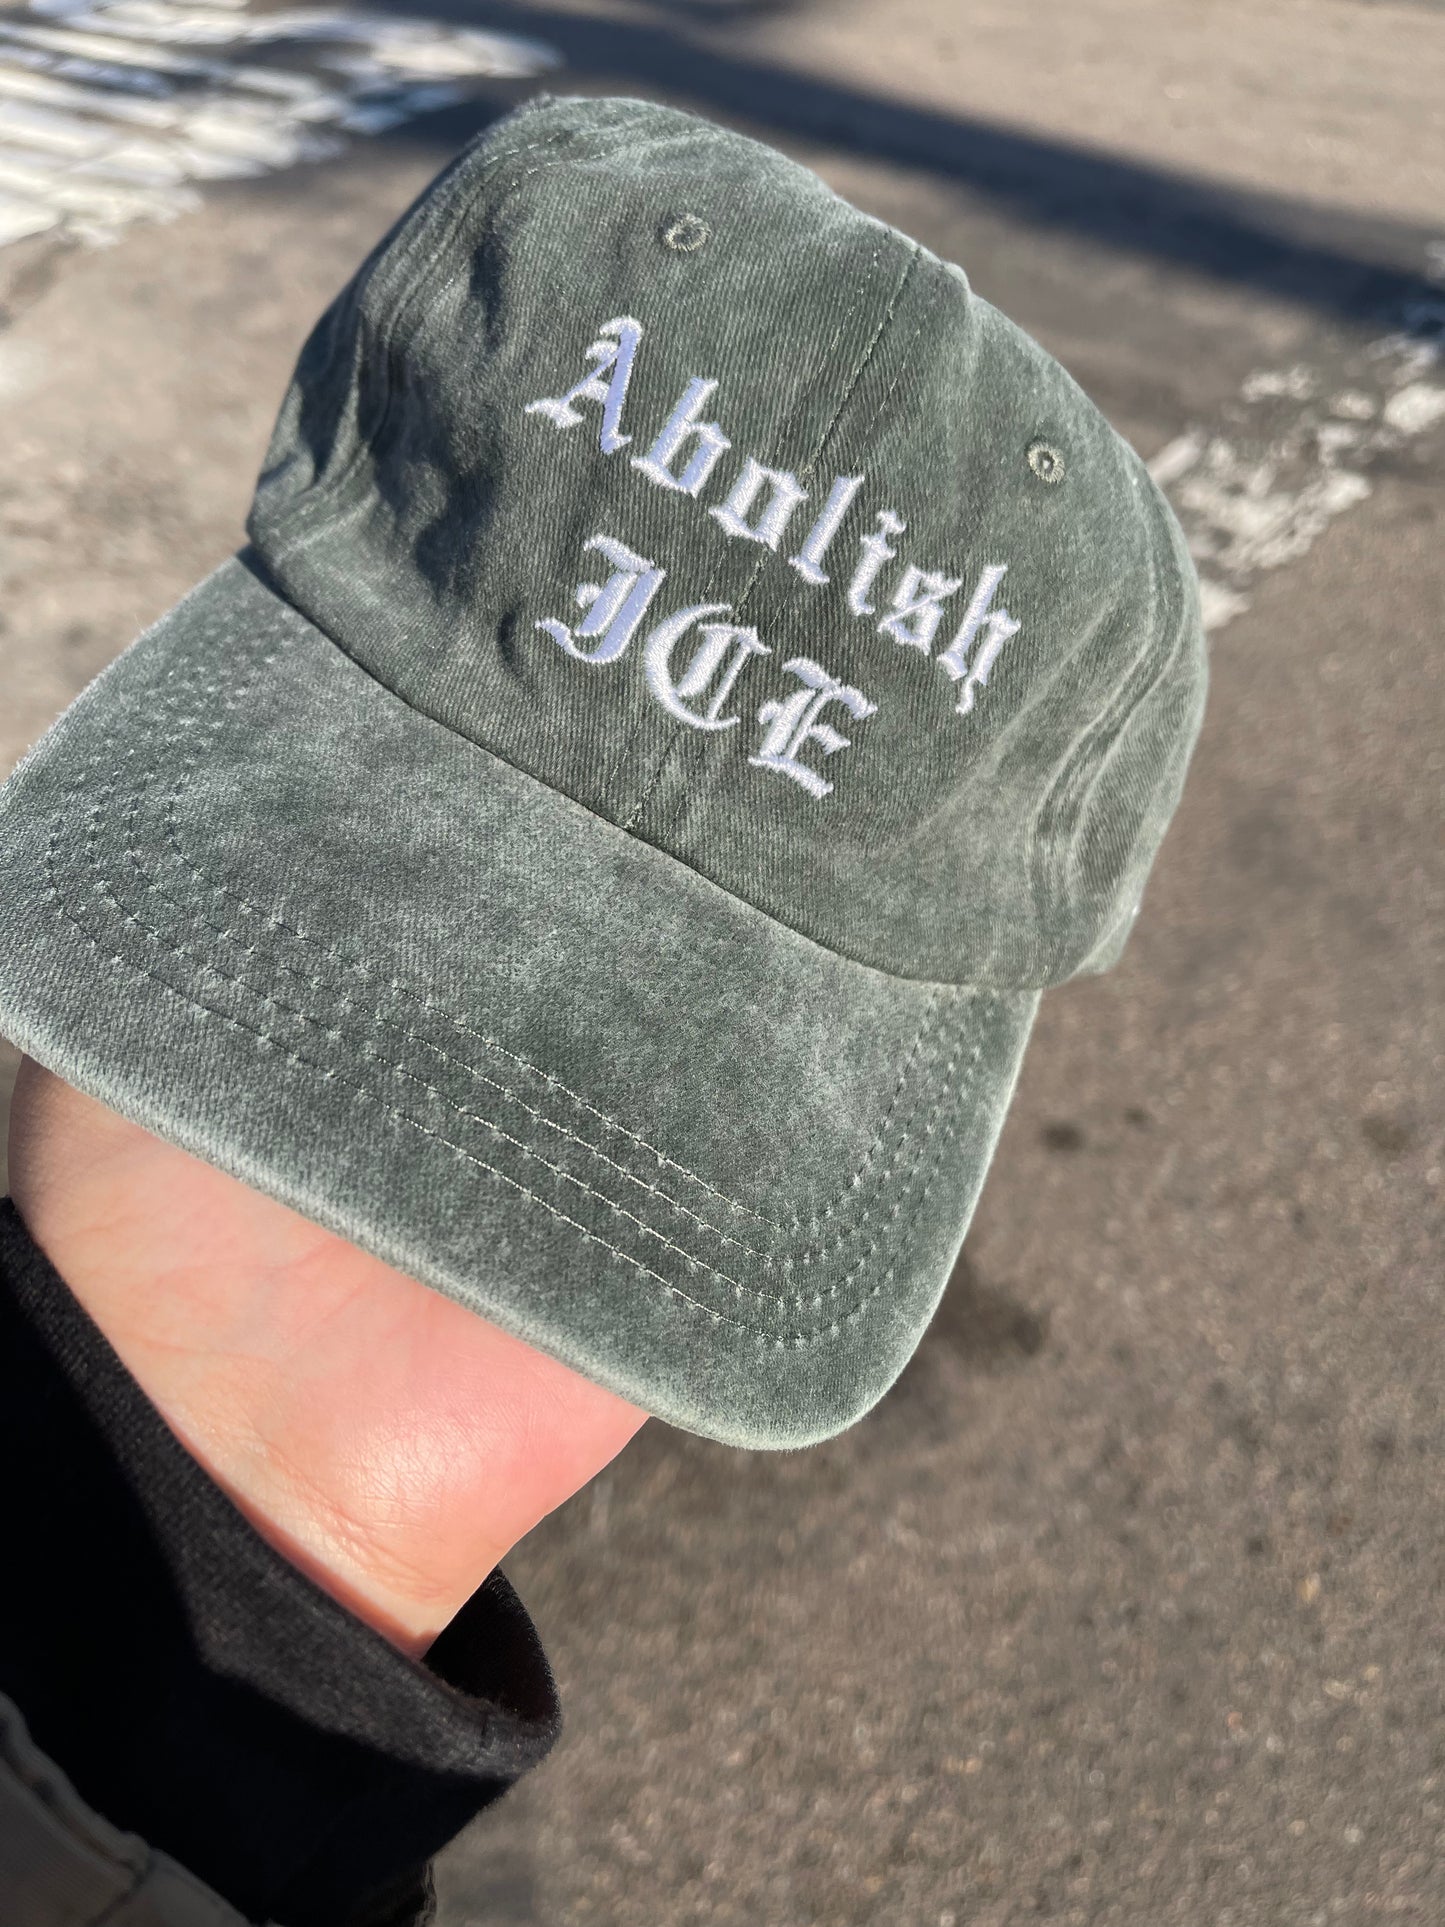 Abolish ICE Hat